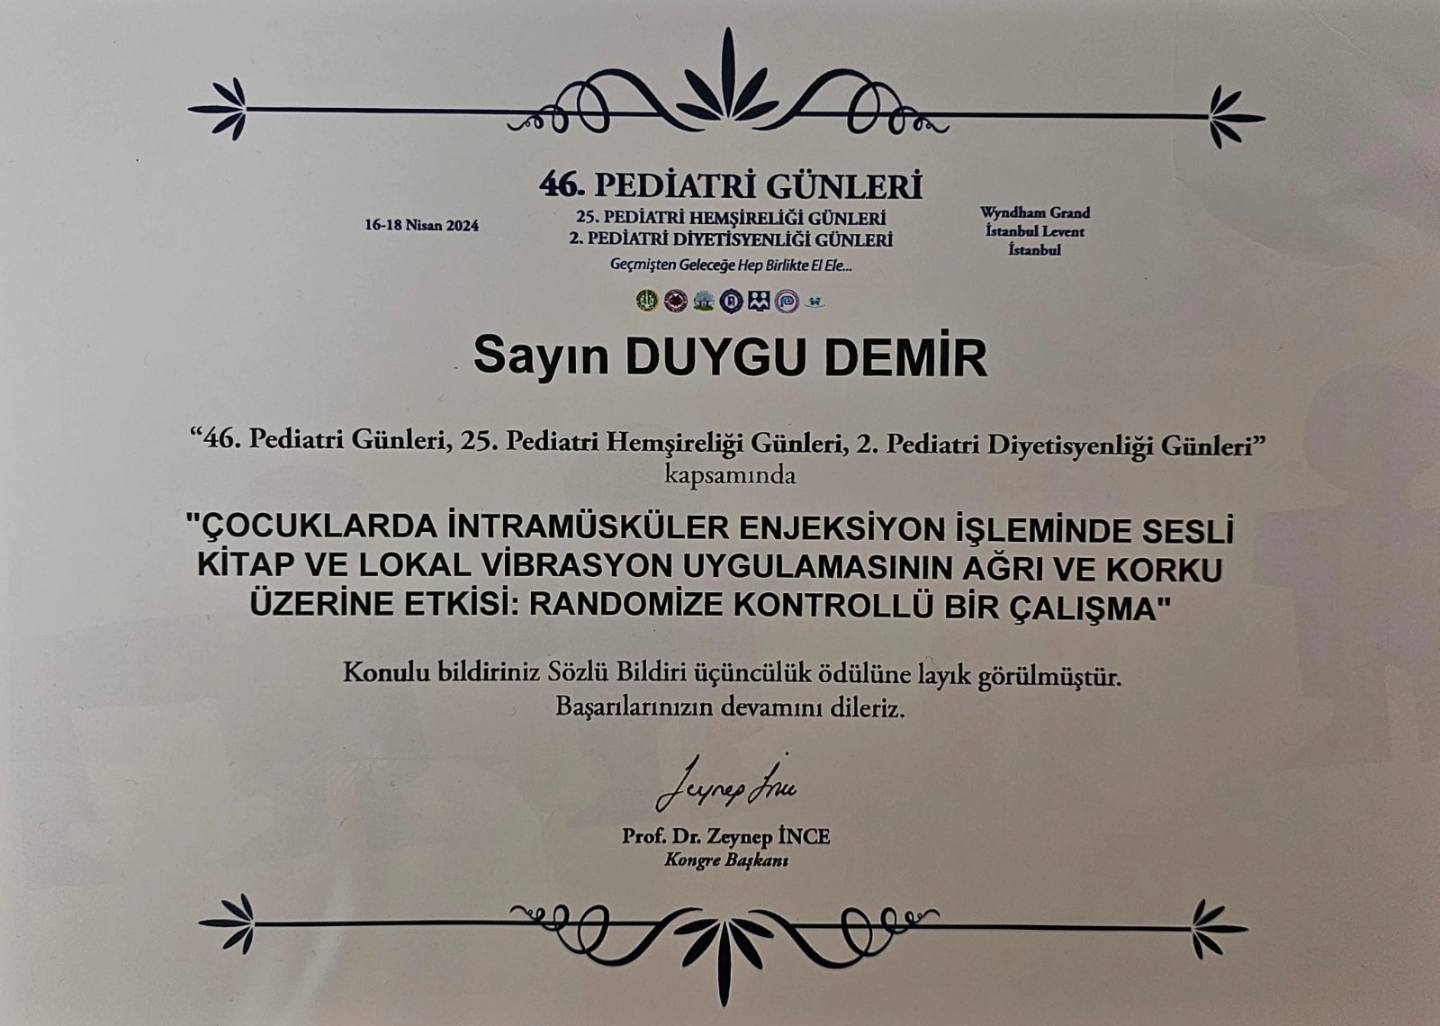 Yalova Istanbul Universite Ogretim Uye Hemsirelik Gunleri Calisma Odul (1)